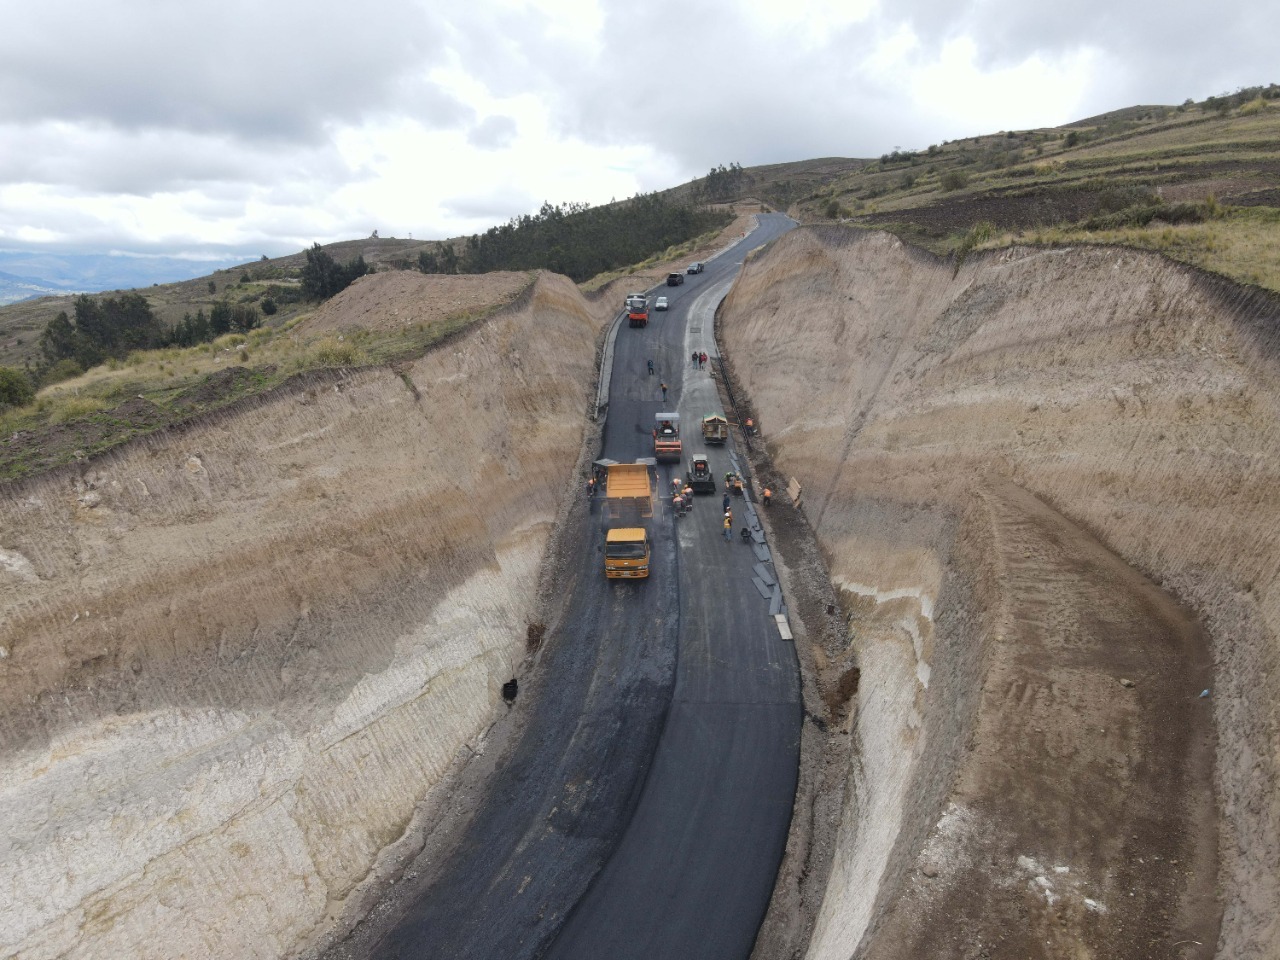 Prefectura de Chimborazo, coloca carpeta asfáltica en el nuevo acceso sur, la “Vía de los Puruhaes”